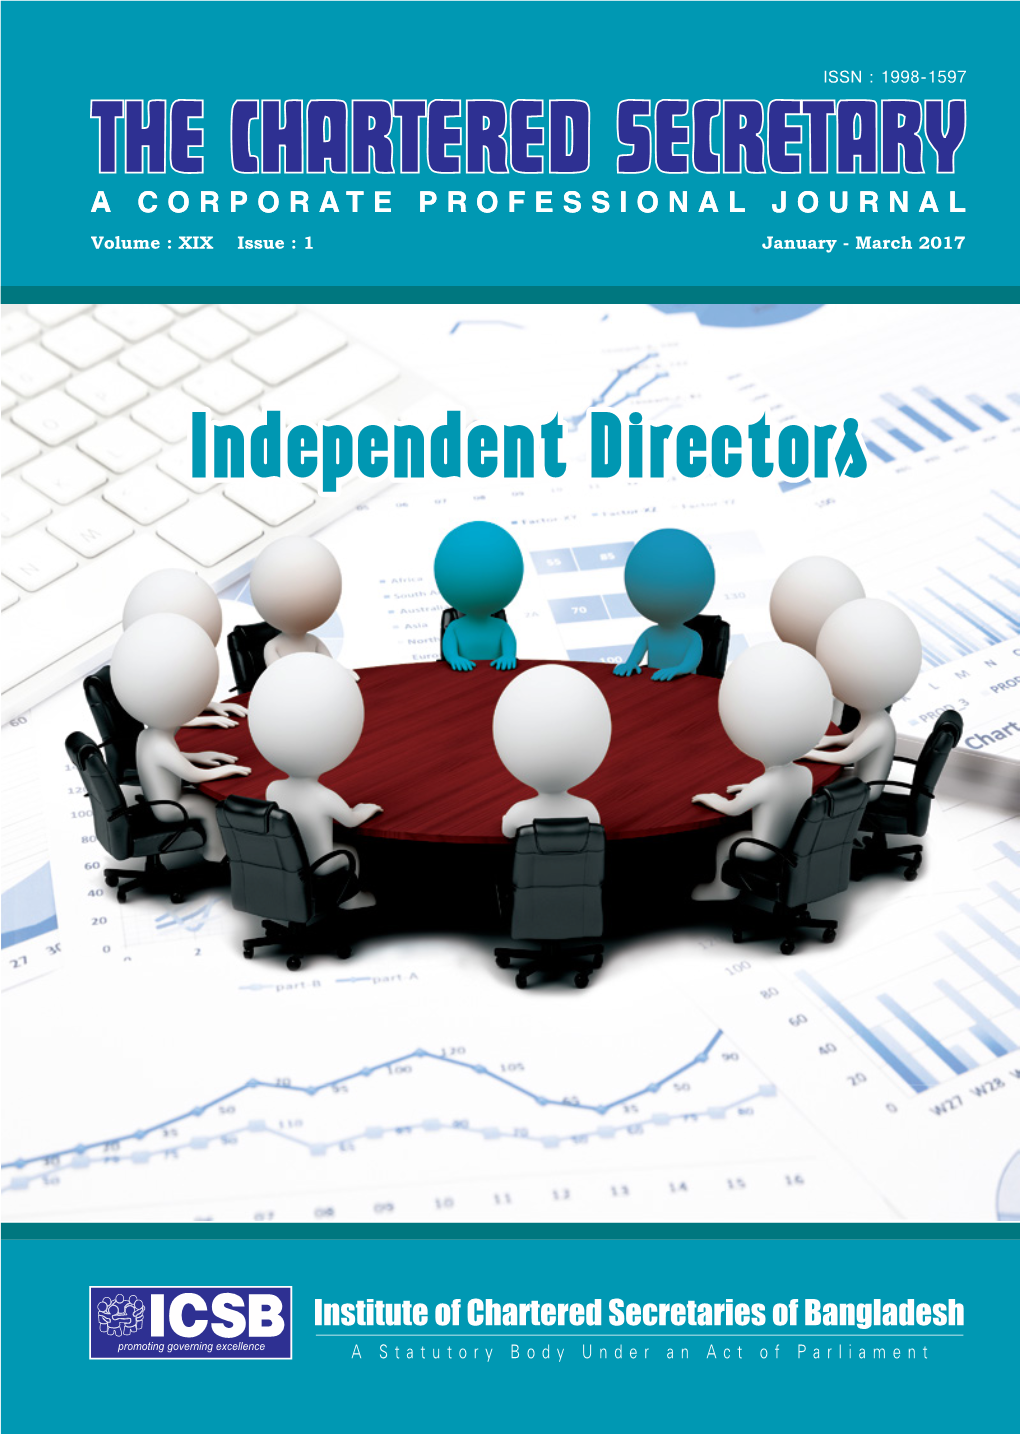 Independent Directors